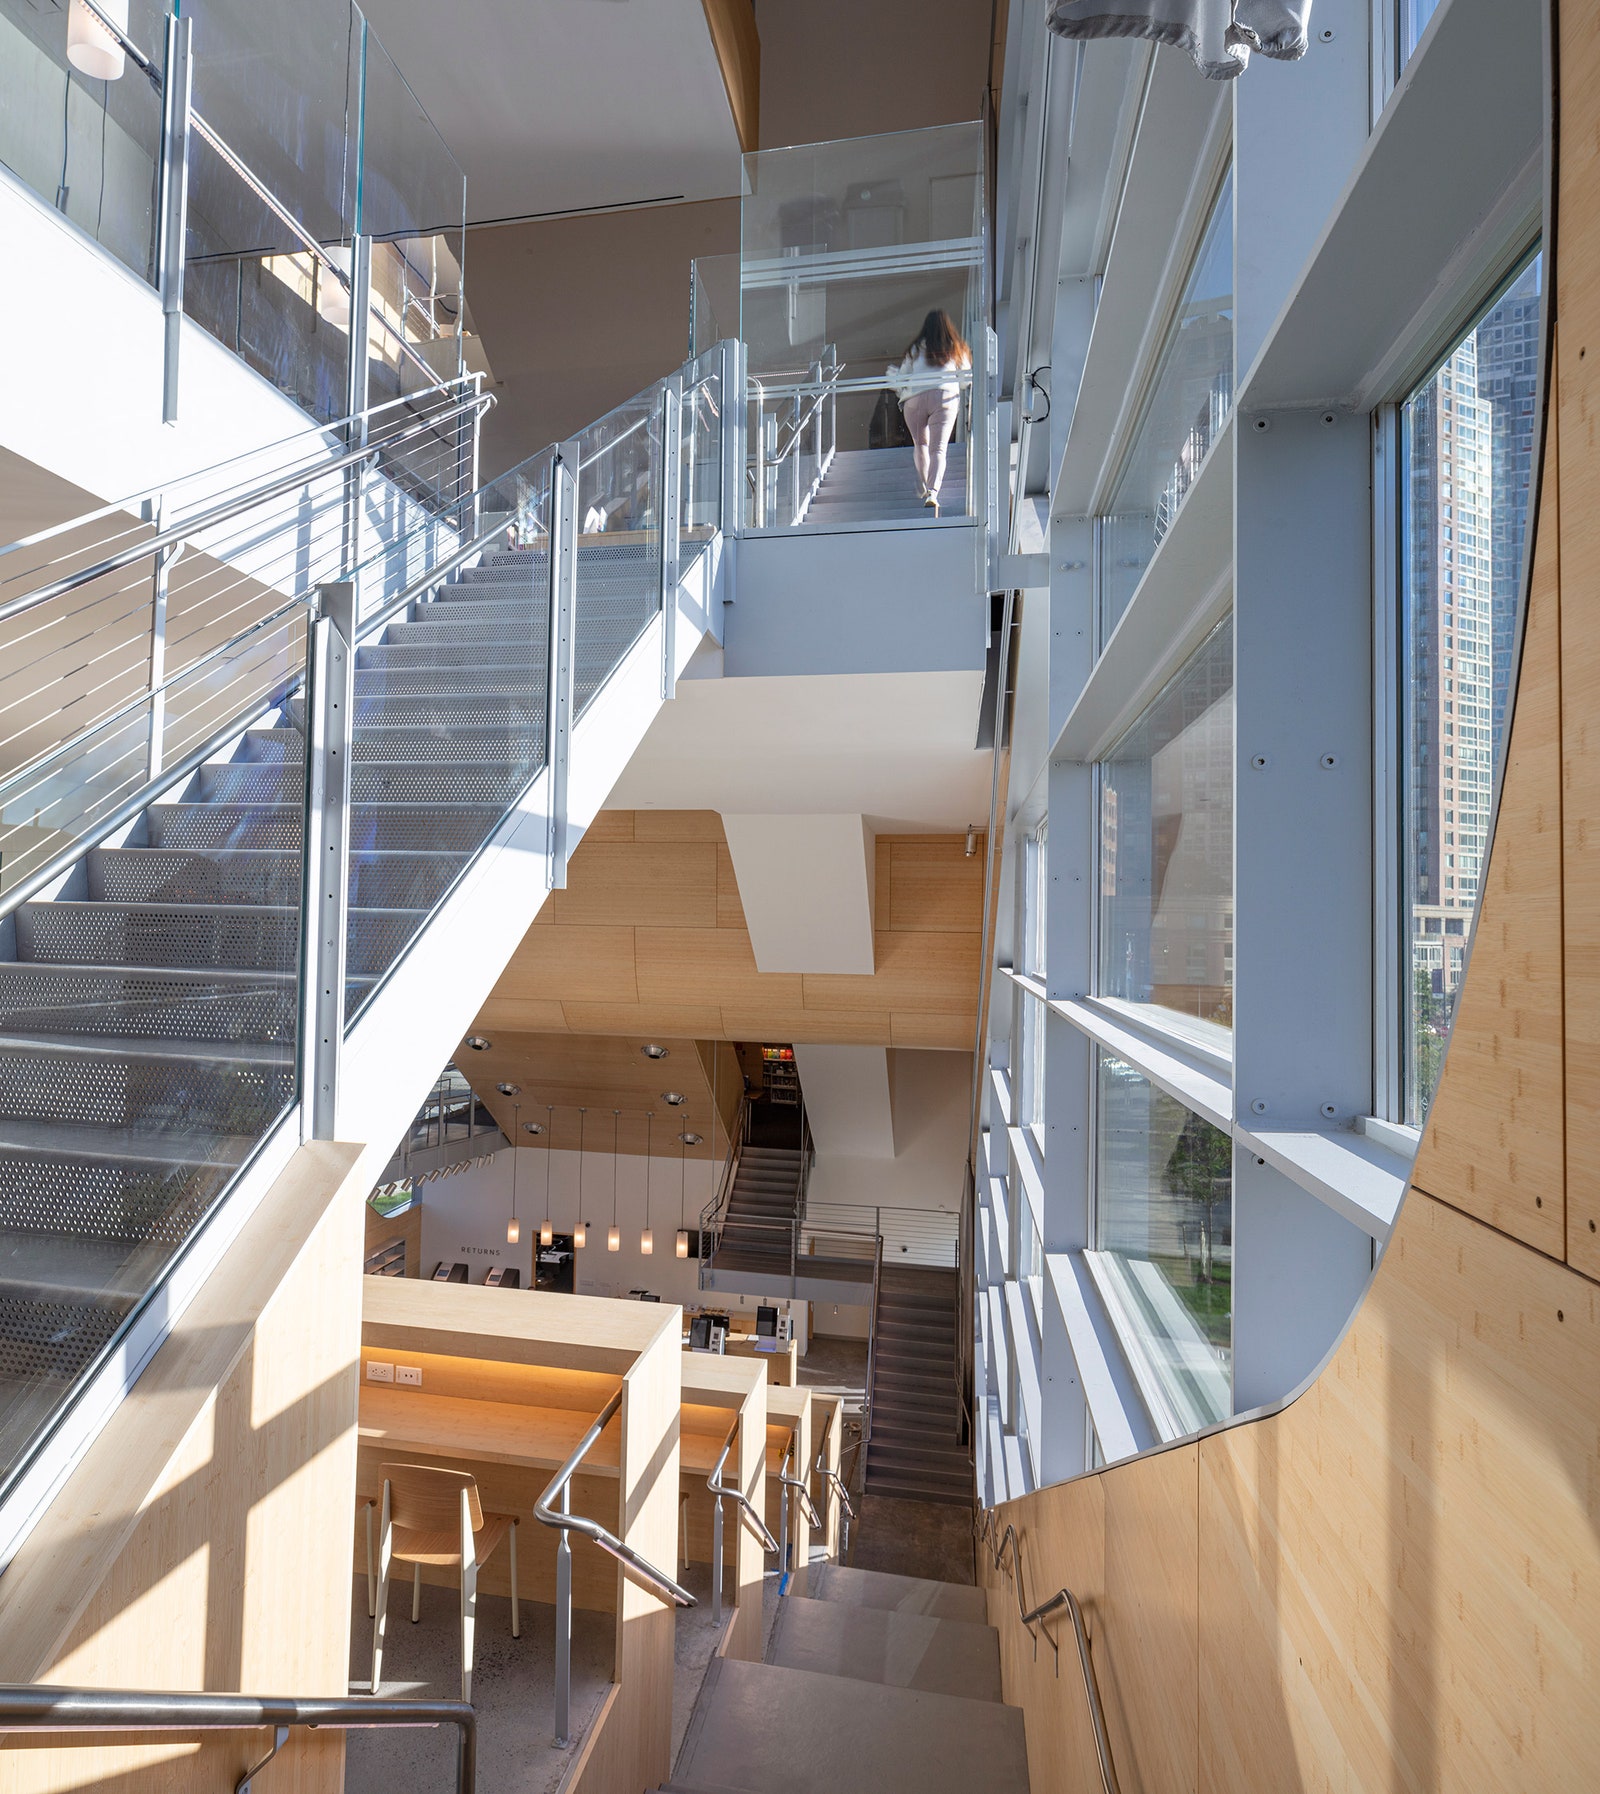 В НьюЙорке открылась новая библиотека по проекту бюро Steven Holl Architects